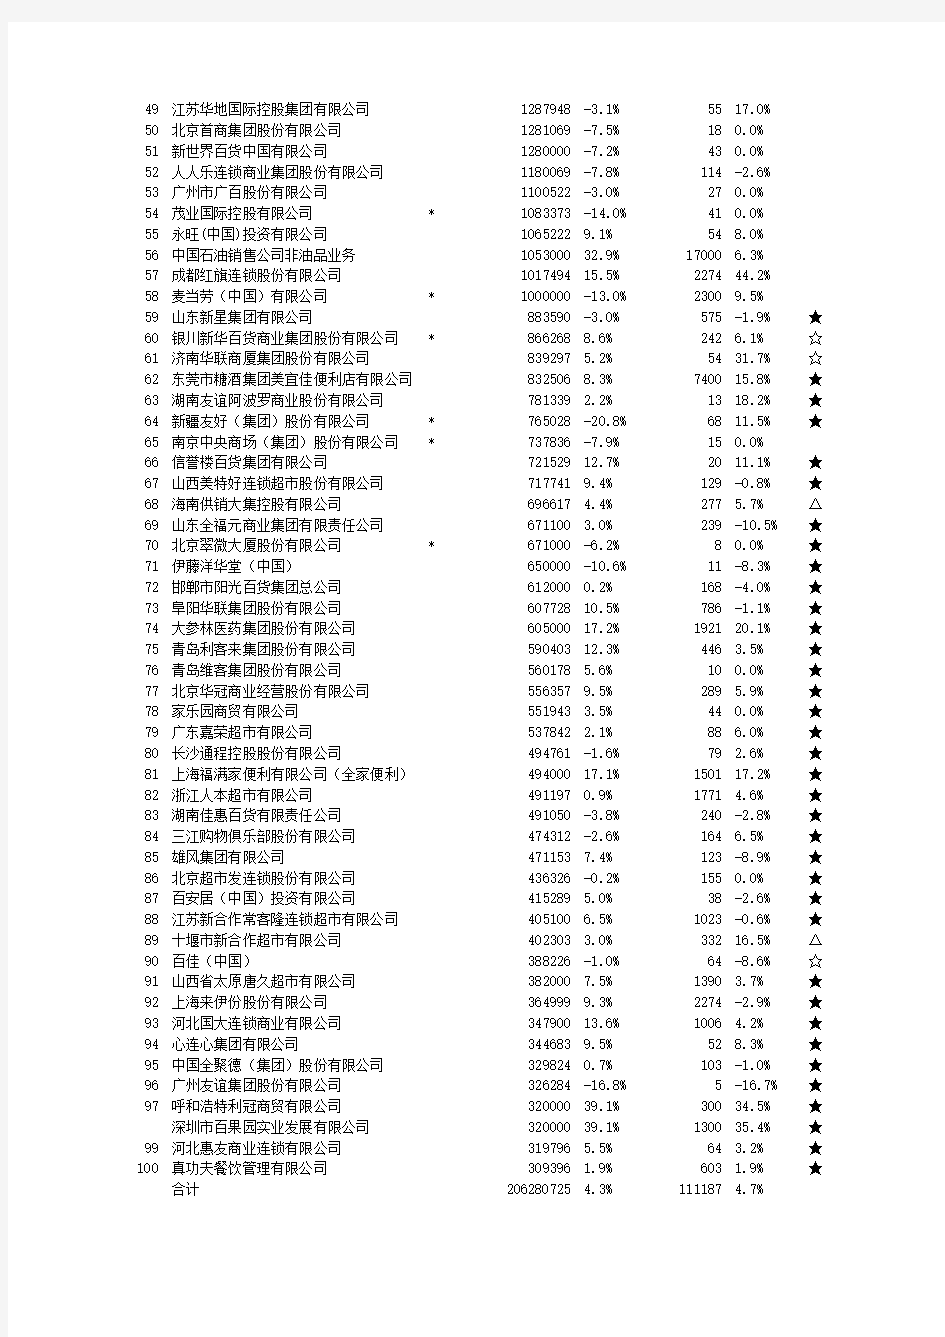 2015年中国连锁超市排名前100-中国连锁经营协会发布